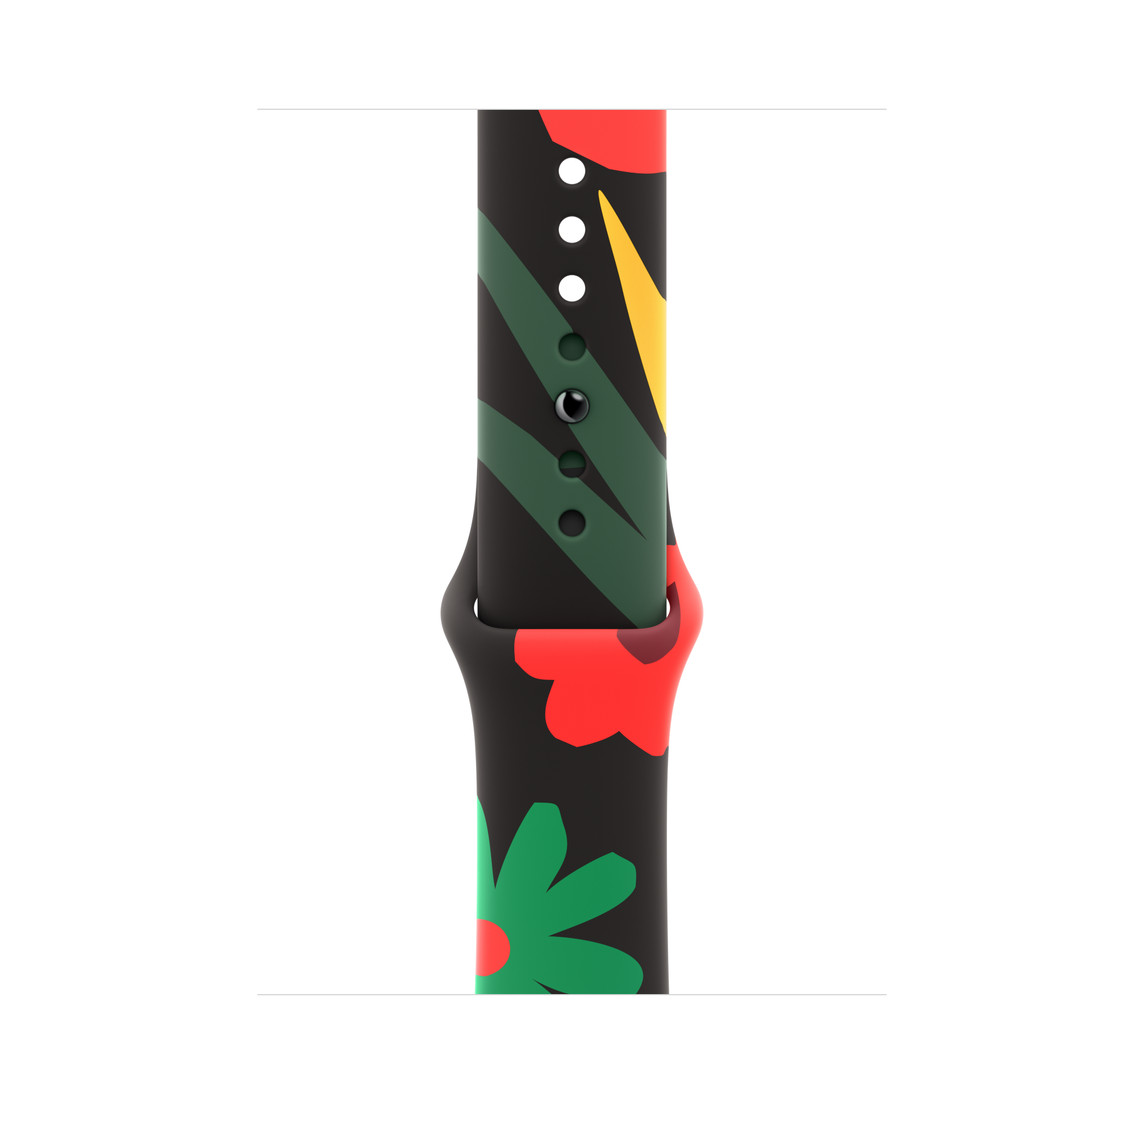 Black Unityスポーツバンドユニティブルーム。レッド、グリーン、イエローのカラフルな配色で、シンプルなスタイルの様々な形と大きさの花のイラストがあしらわれている。バックルはピンをはめ込むデザイン。